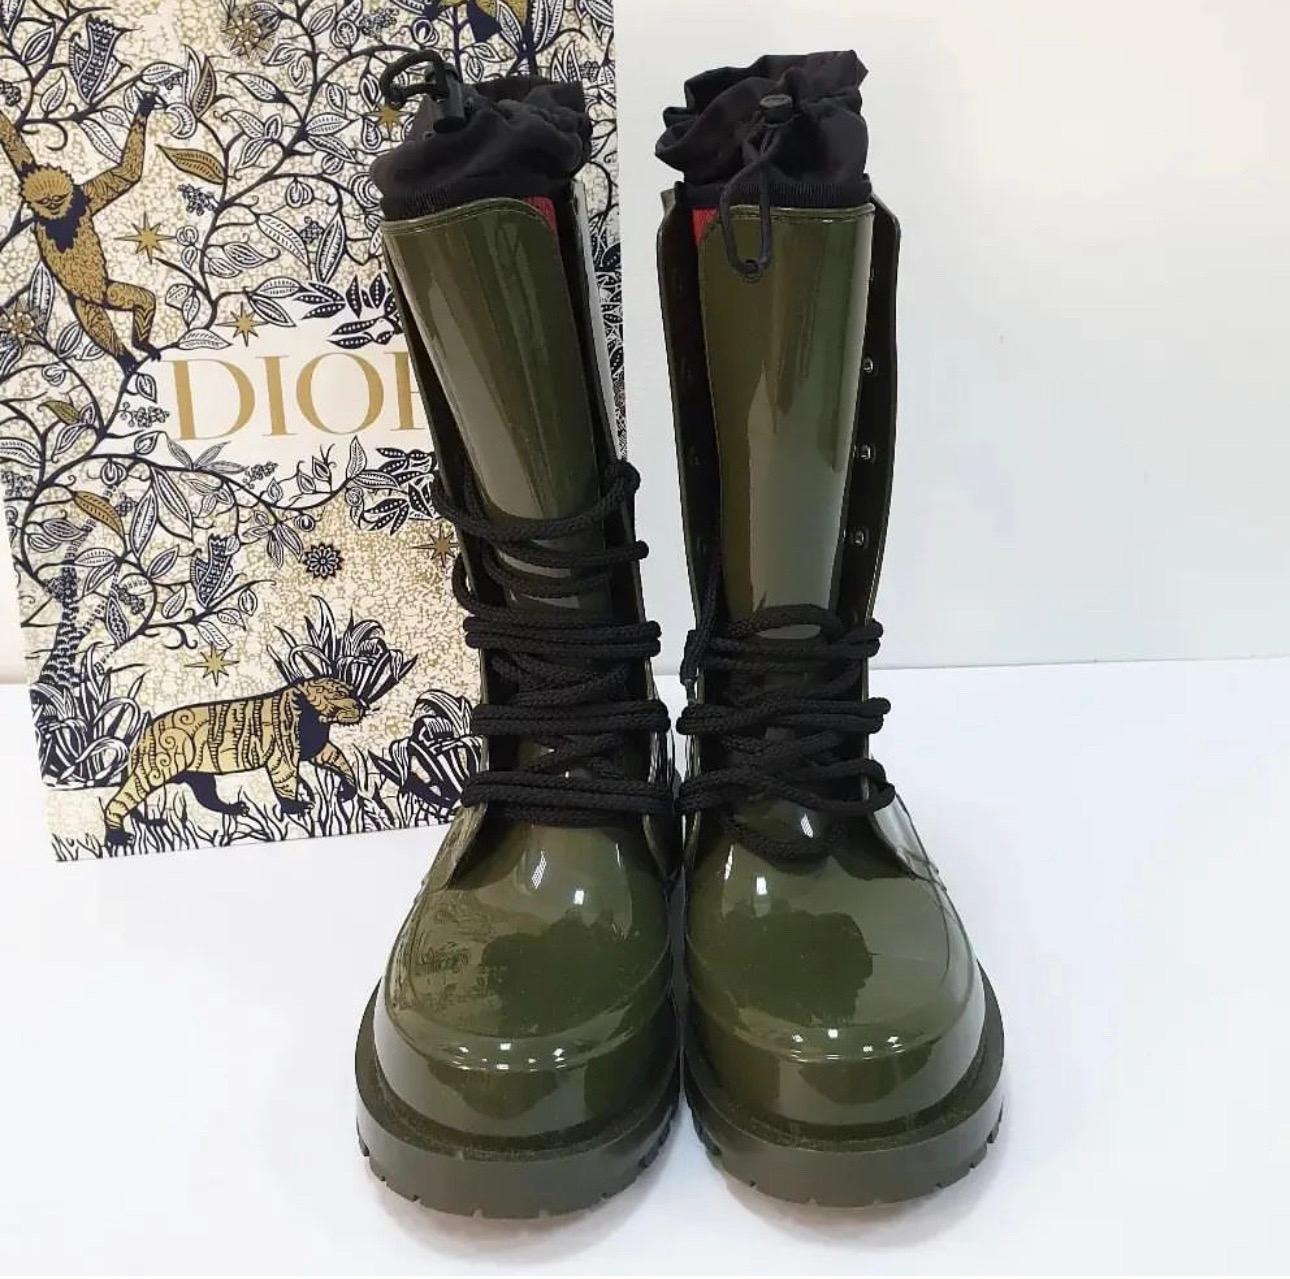 Diese herrlichen Regenstiefel von Dior werten Ihren Kleiderschrank sofort auf. Das in Italien gefertigte Paar besteht aus glänzendem Gummi und ist in der Farbe Army of Green gehalten. Sie strahlen Stil und Raffinesse aus und sind sowohl für den Tag